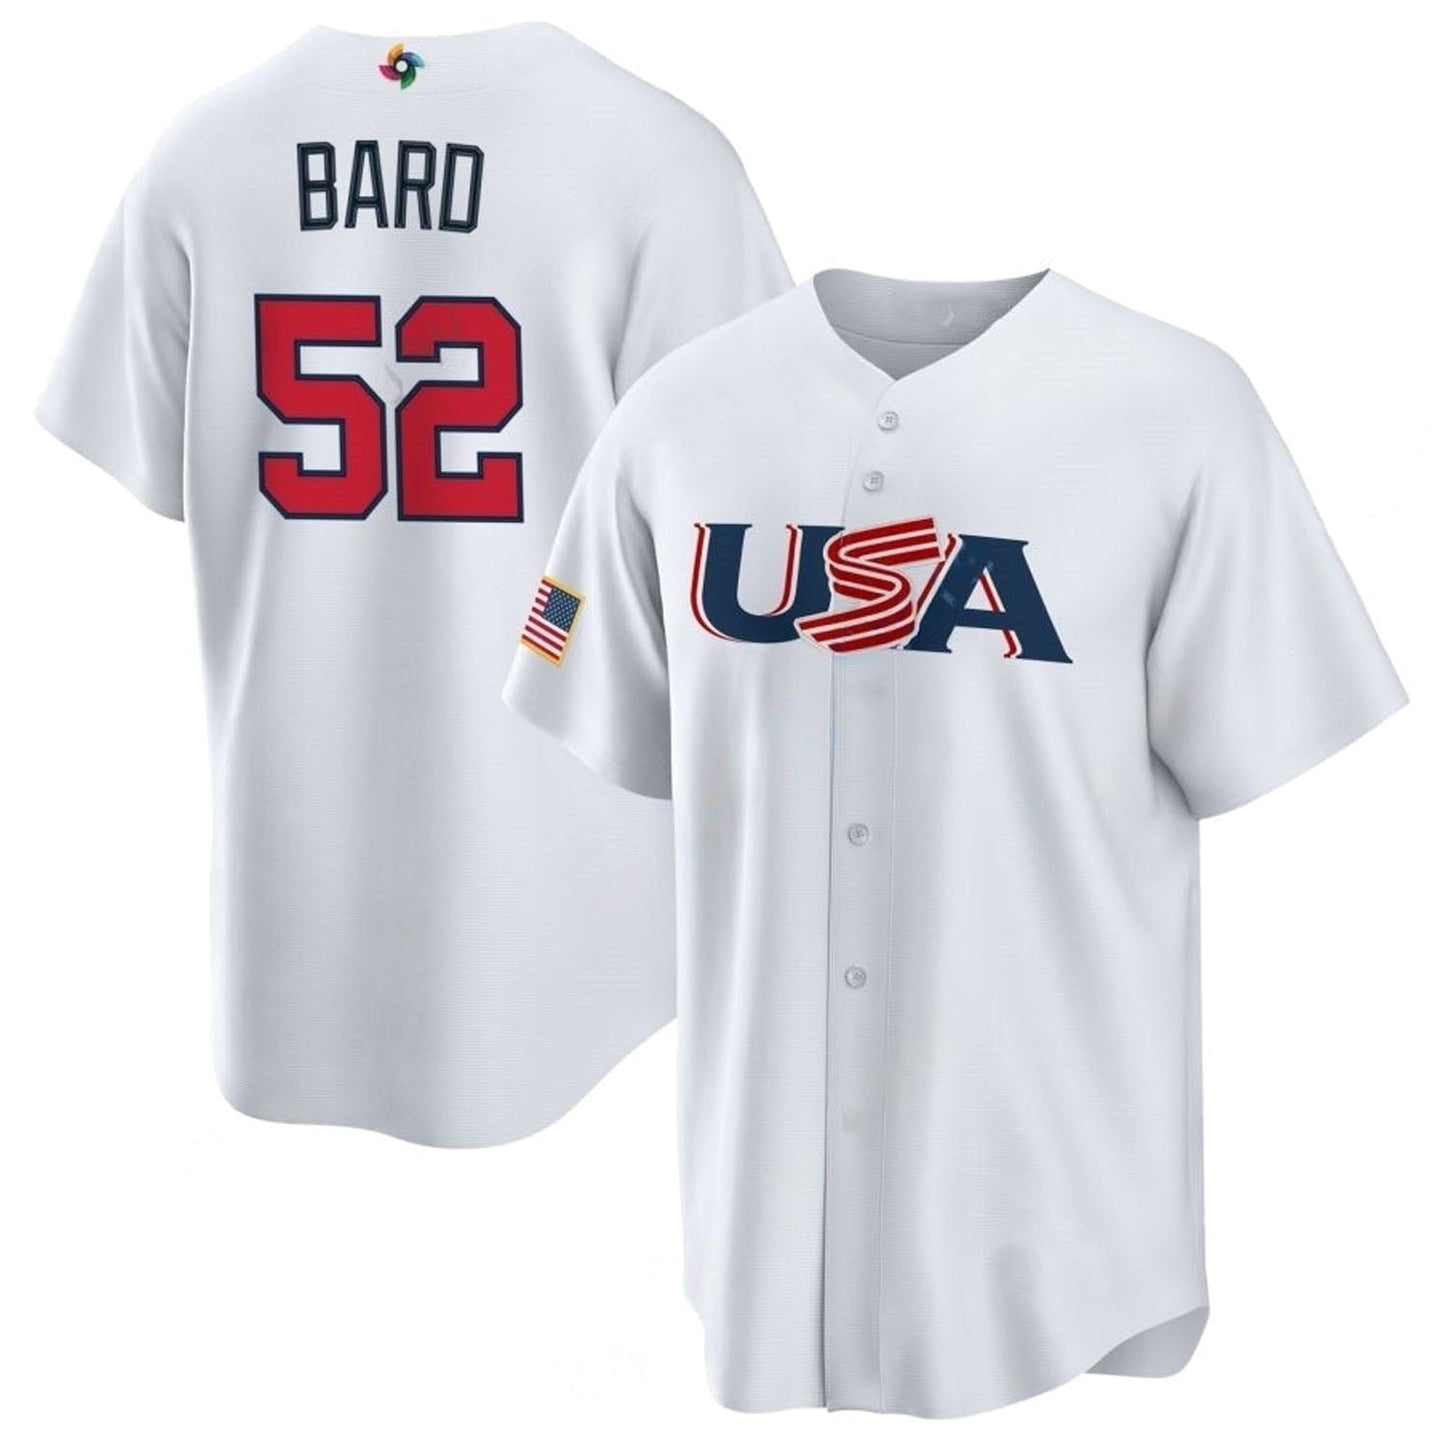 MLB Daniel Bard USA 52 Jersey